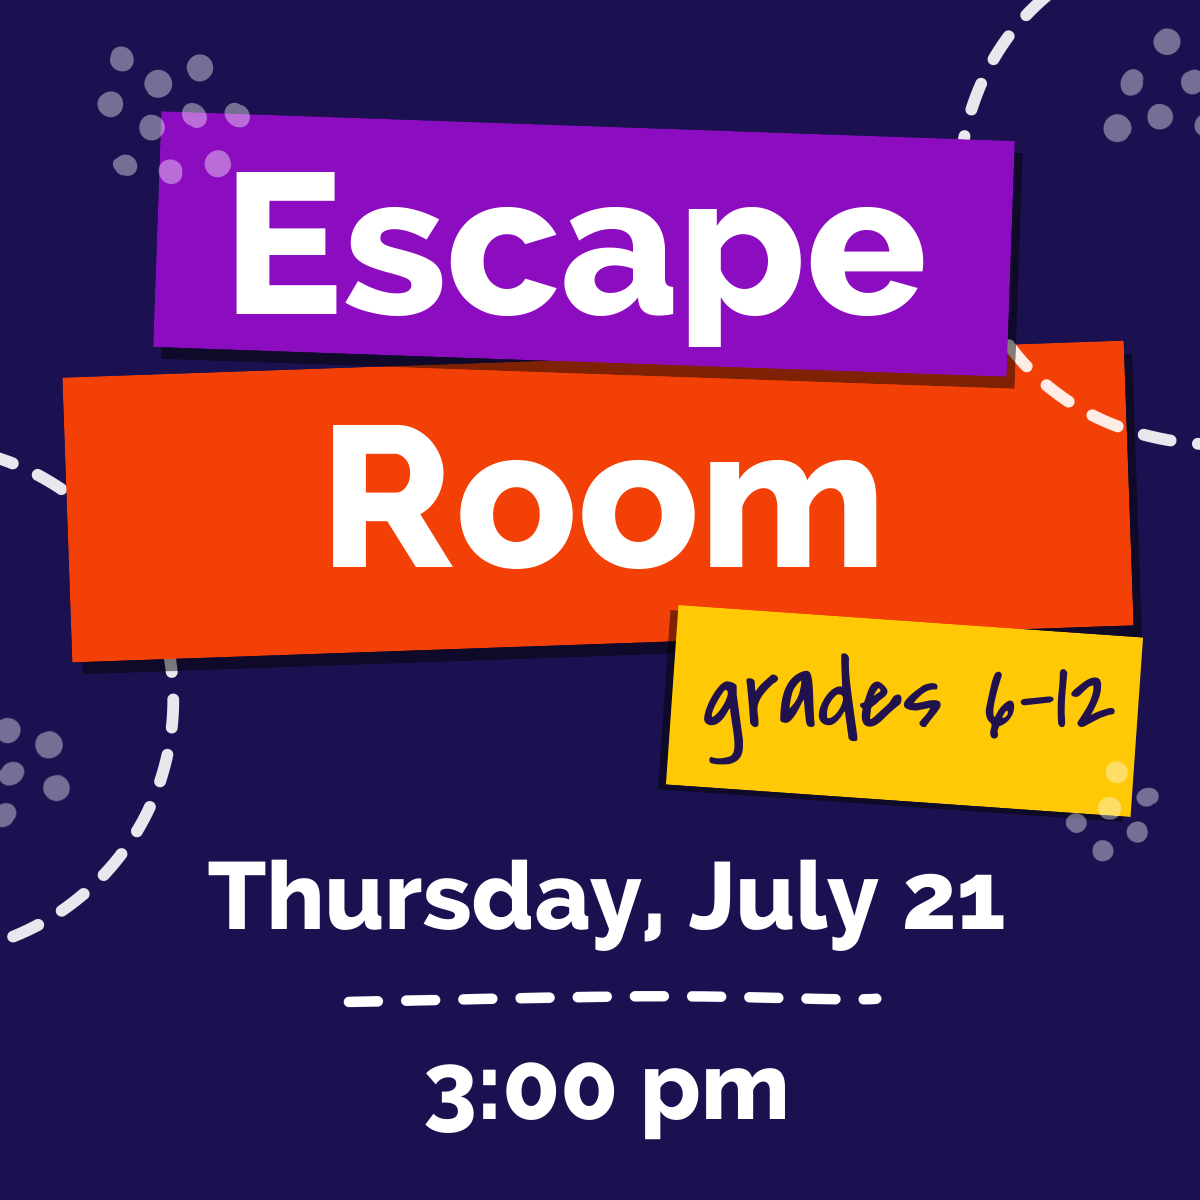 Escape Room Grades 6-12 Thursday, July 21 3:00 pm